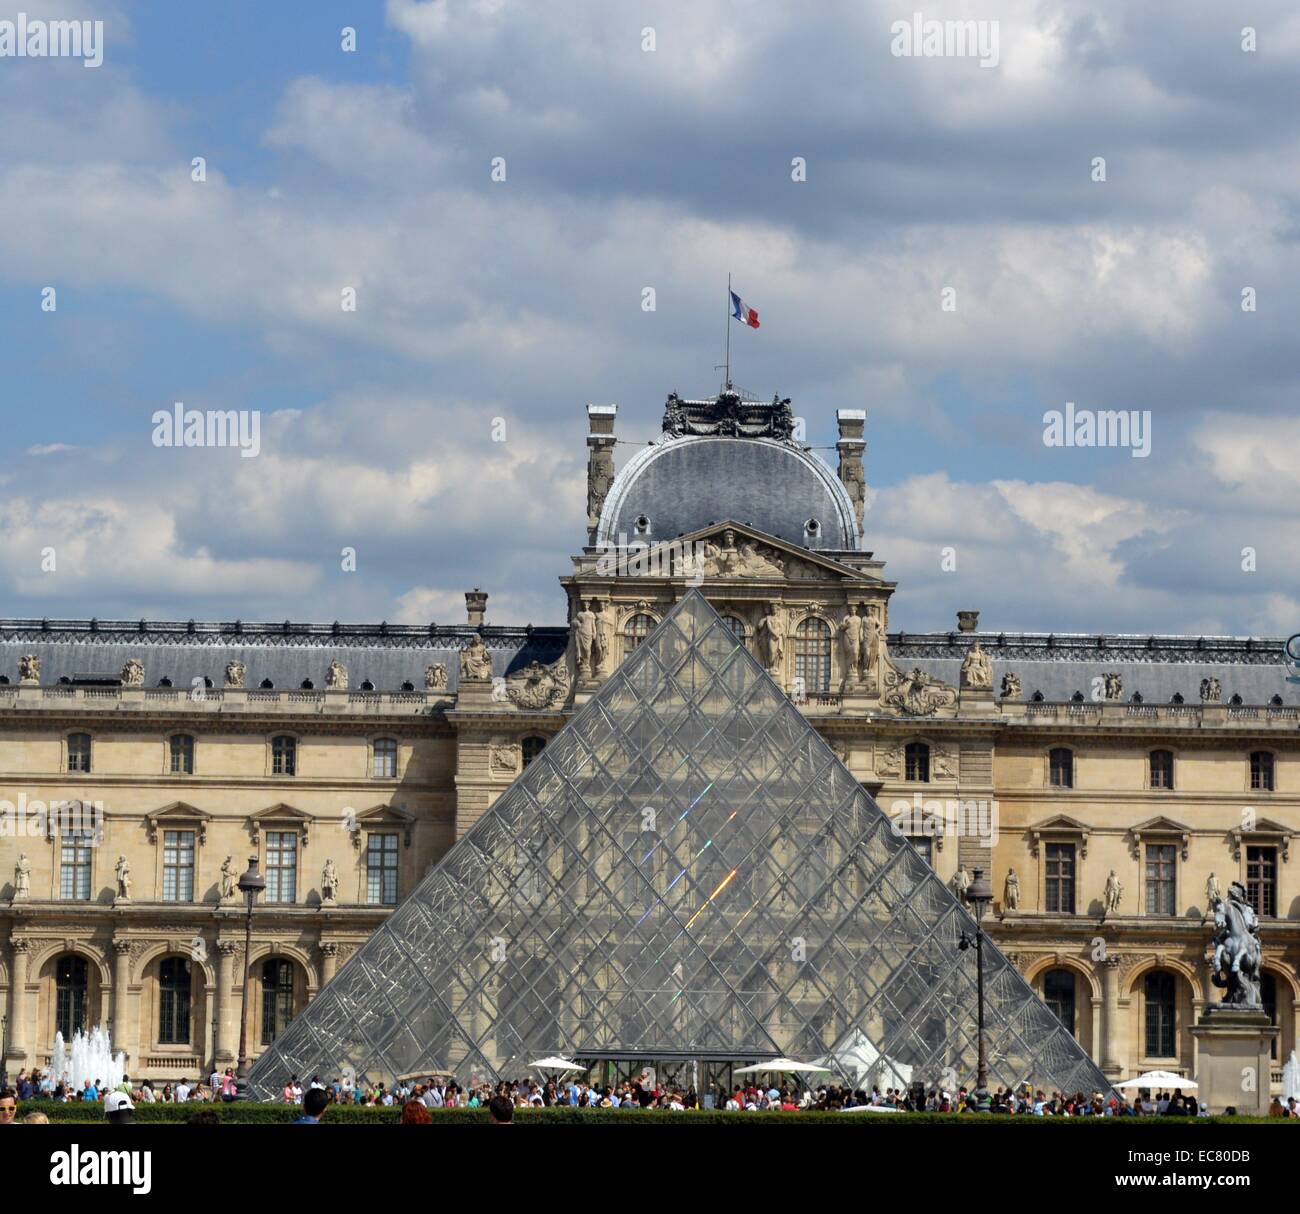 Il museo del Louvre è uno dei più grandi del mondo dei musei e un monumento storico. Stabilito 1792. La Piramide è un vetro di grandi dimensioni e la piramide di metallo circondato da tre piramidi più piccole. Inaugurateed 30 marzo 1989. In data xx secolo. Foto Stock